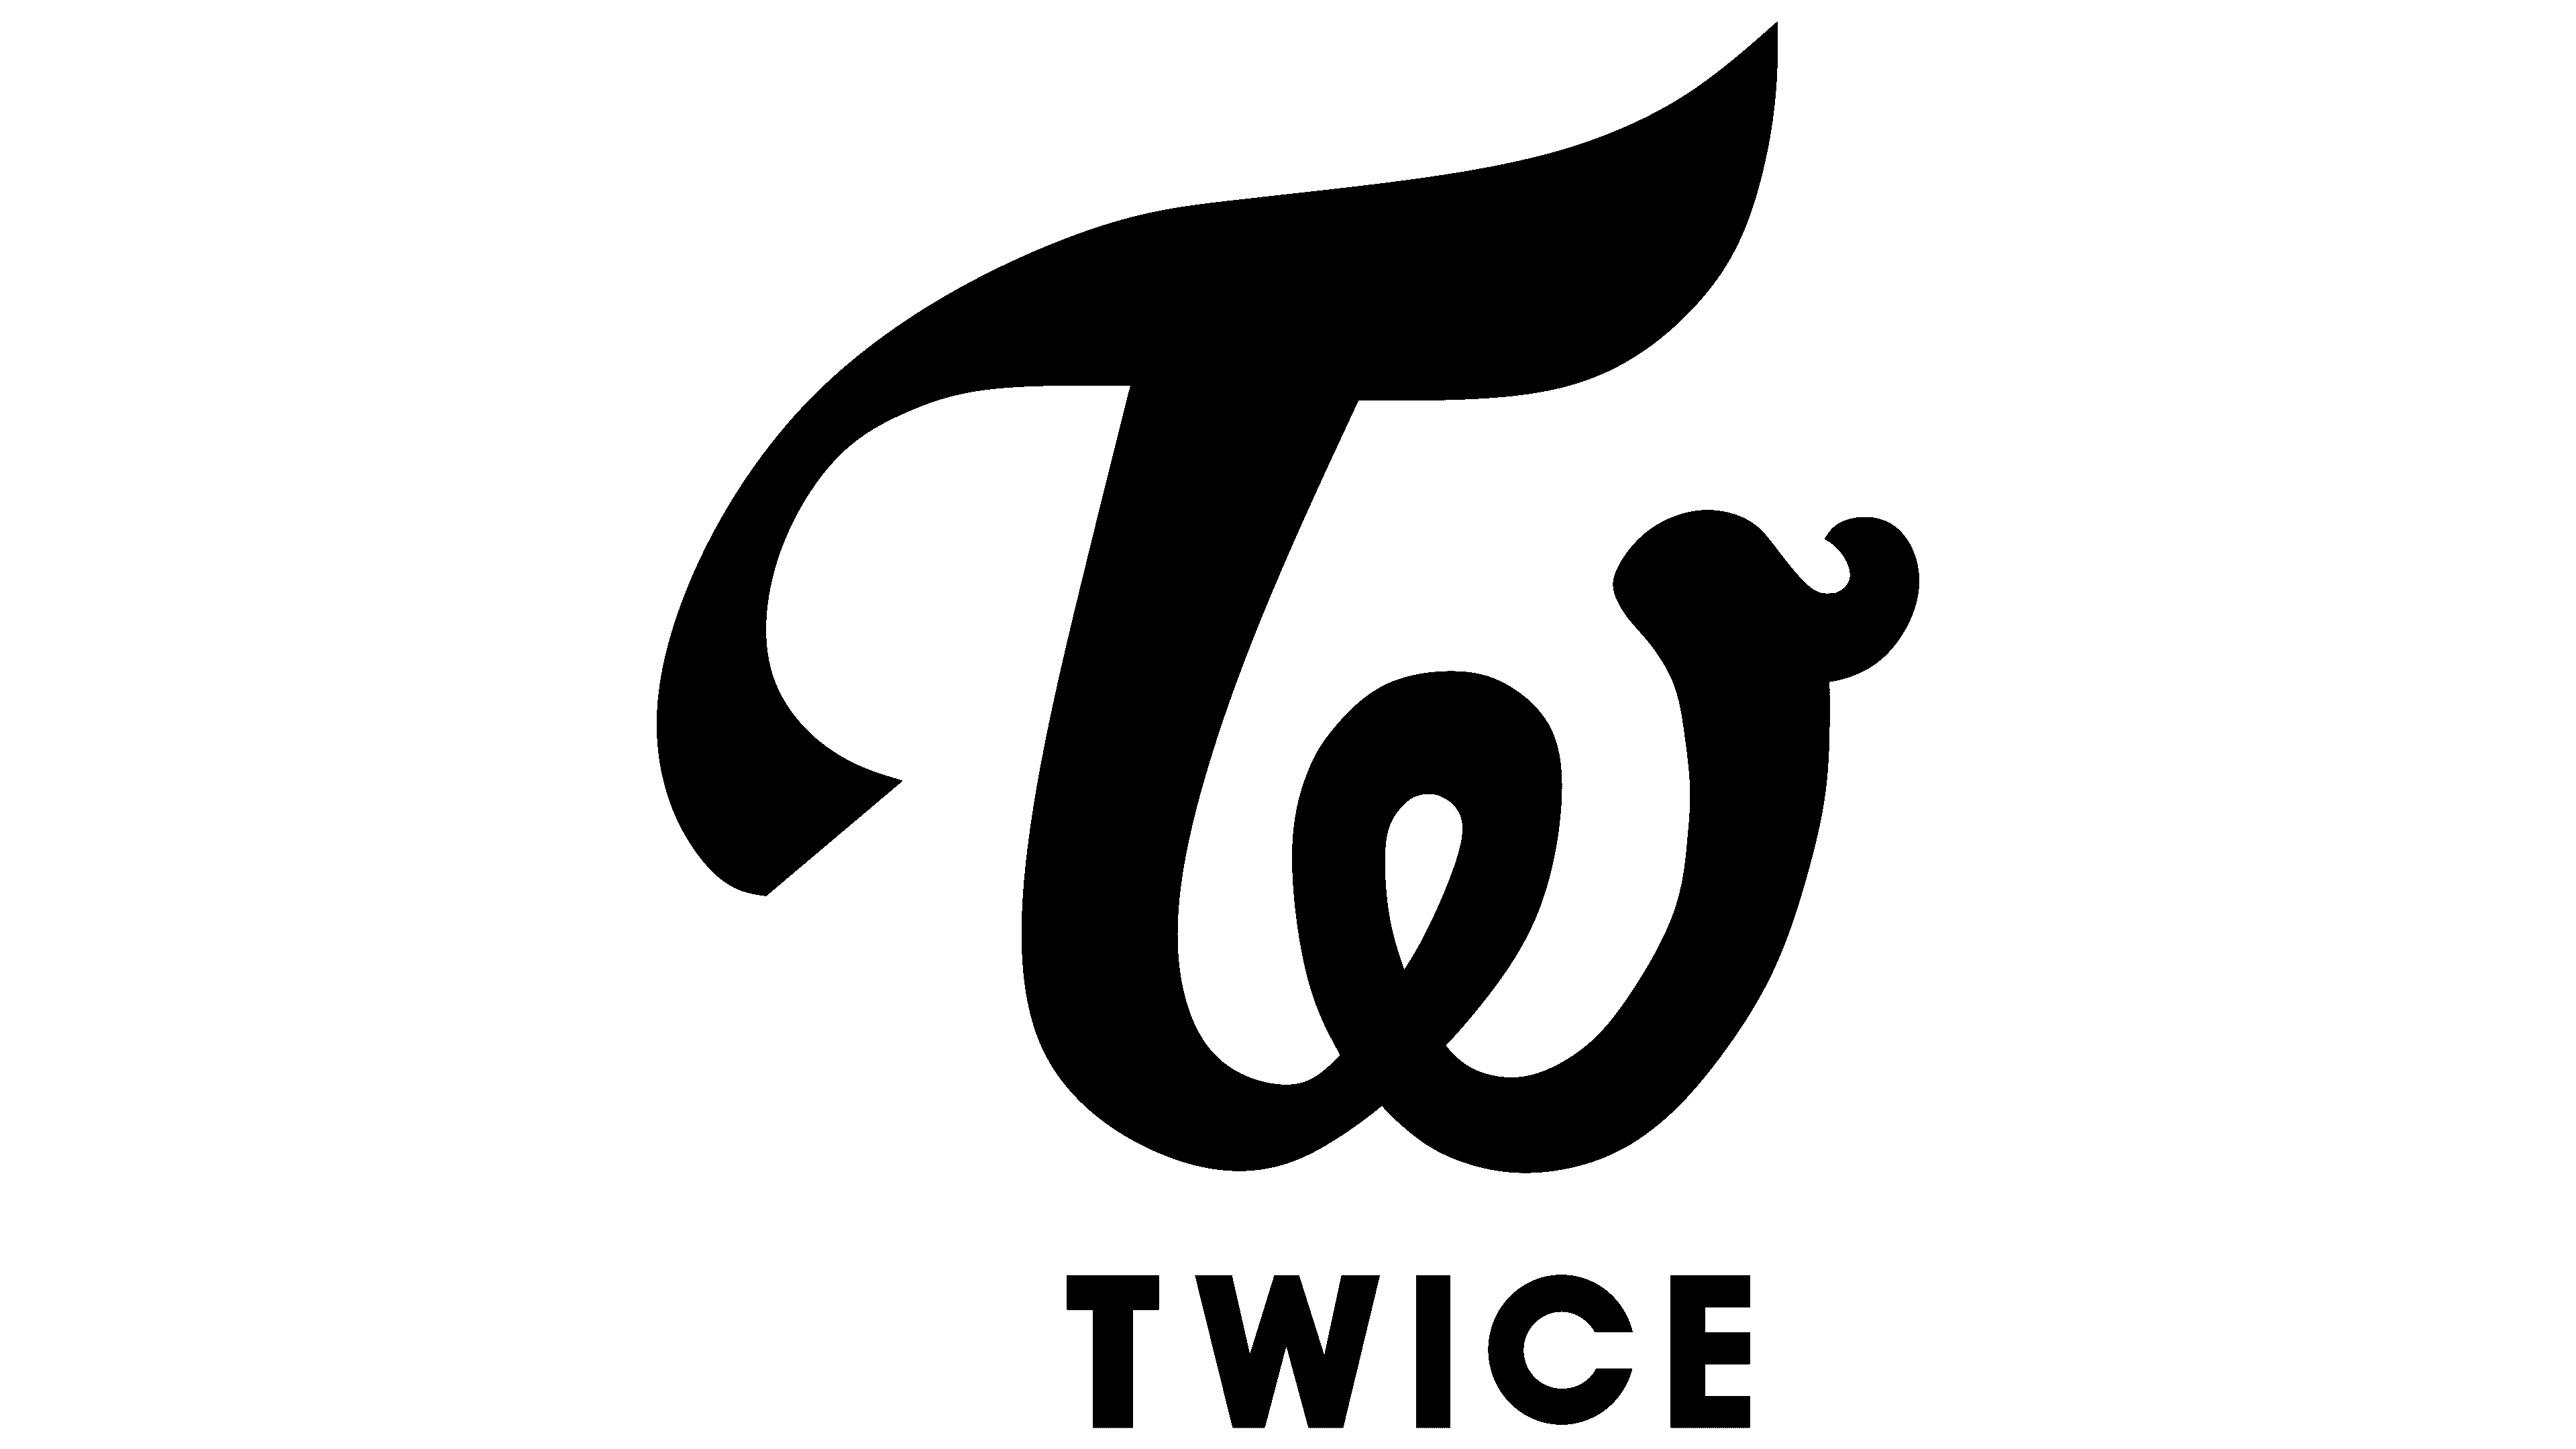 TWICE Logo